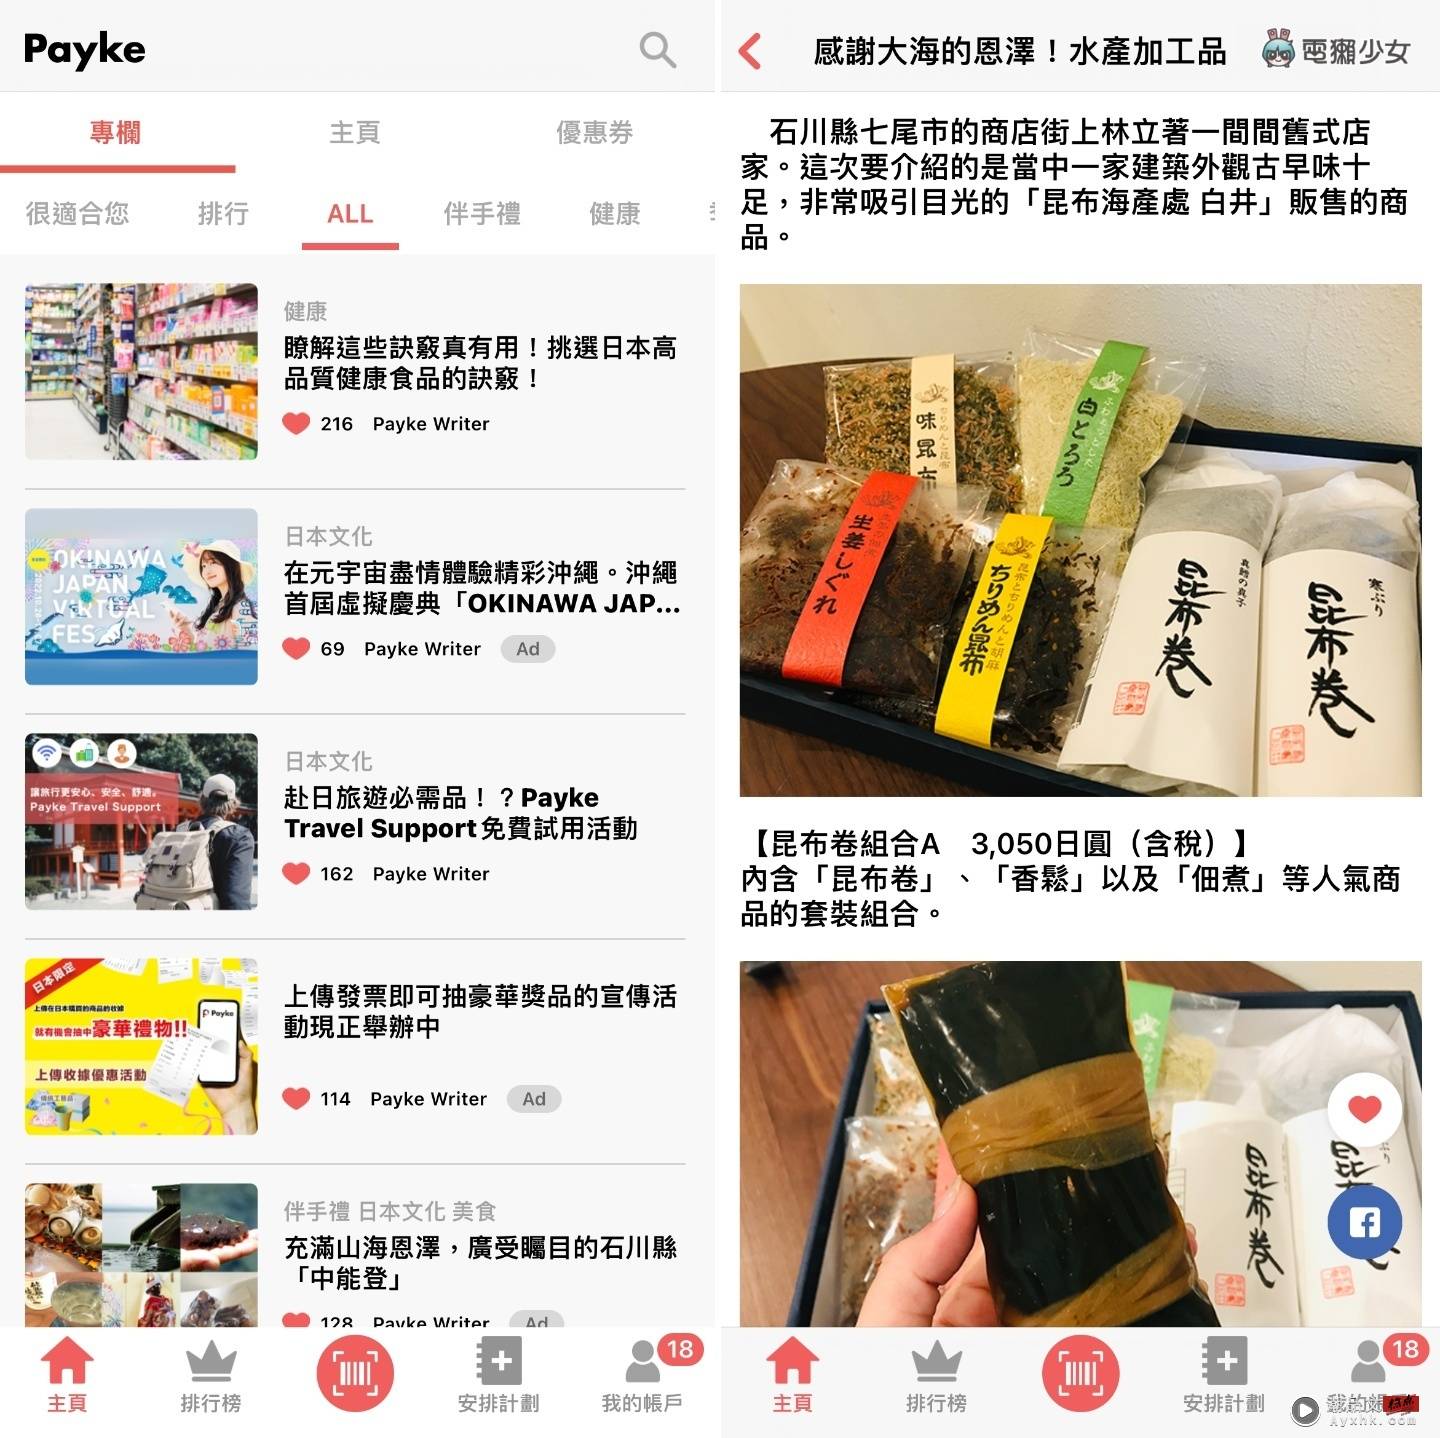 逛日本药妆店必备 App ! 用 Payke 扫条码一秒翻译商品资讯 数码科技 图8张